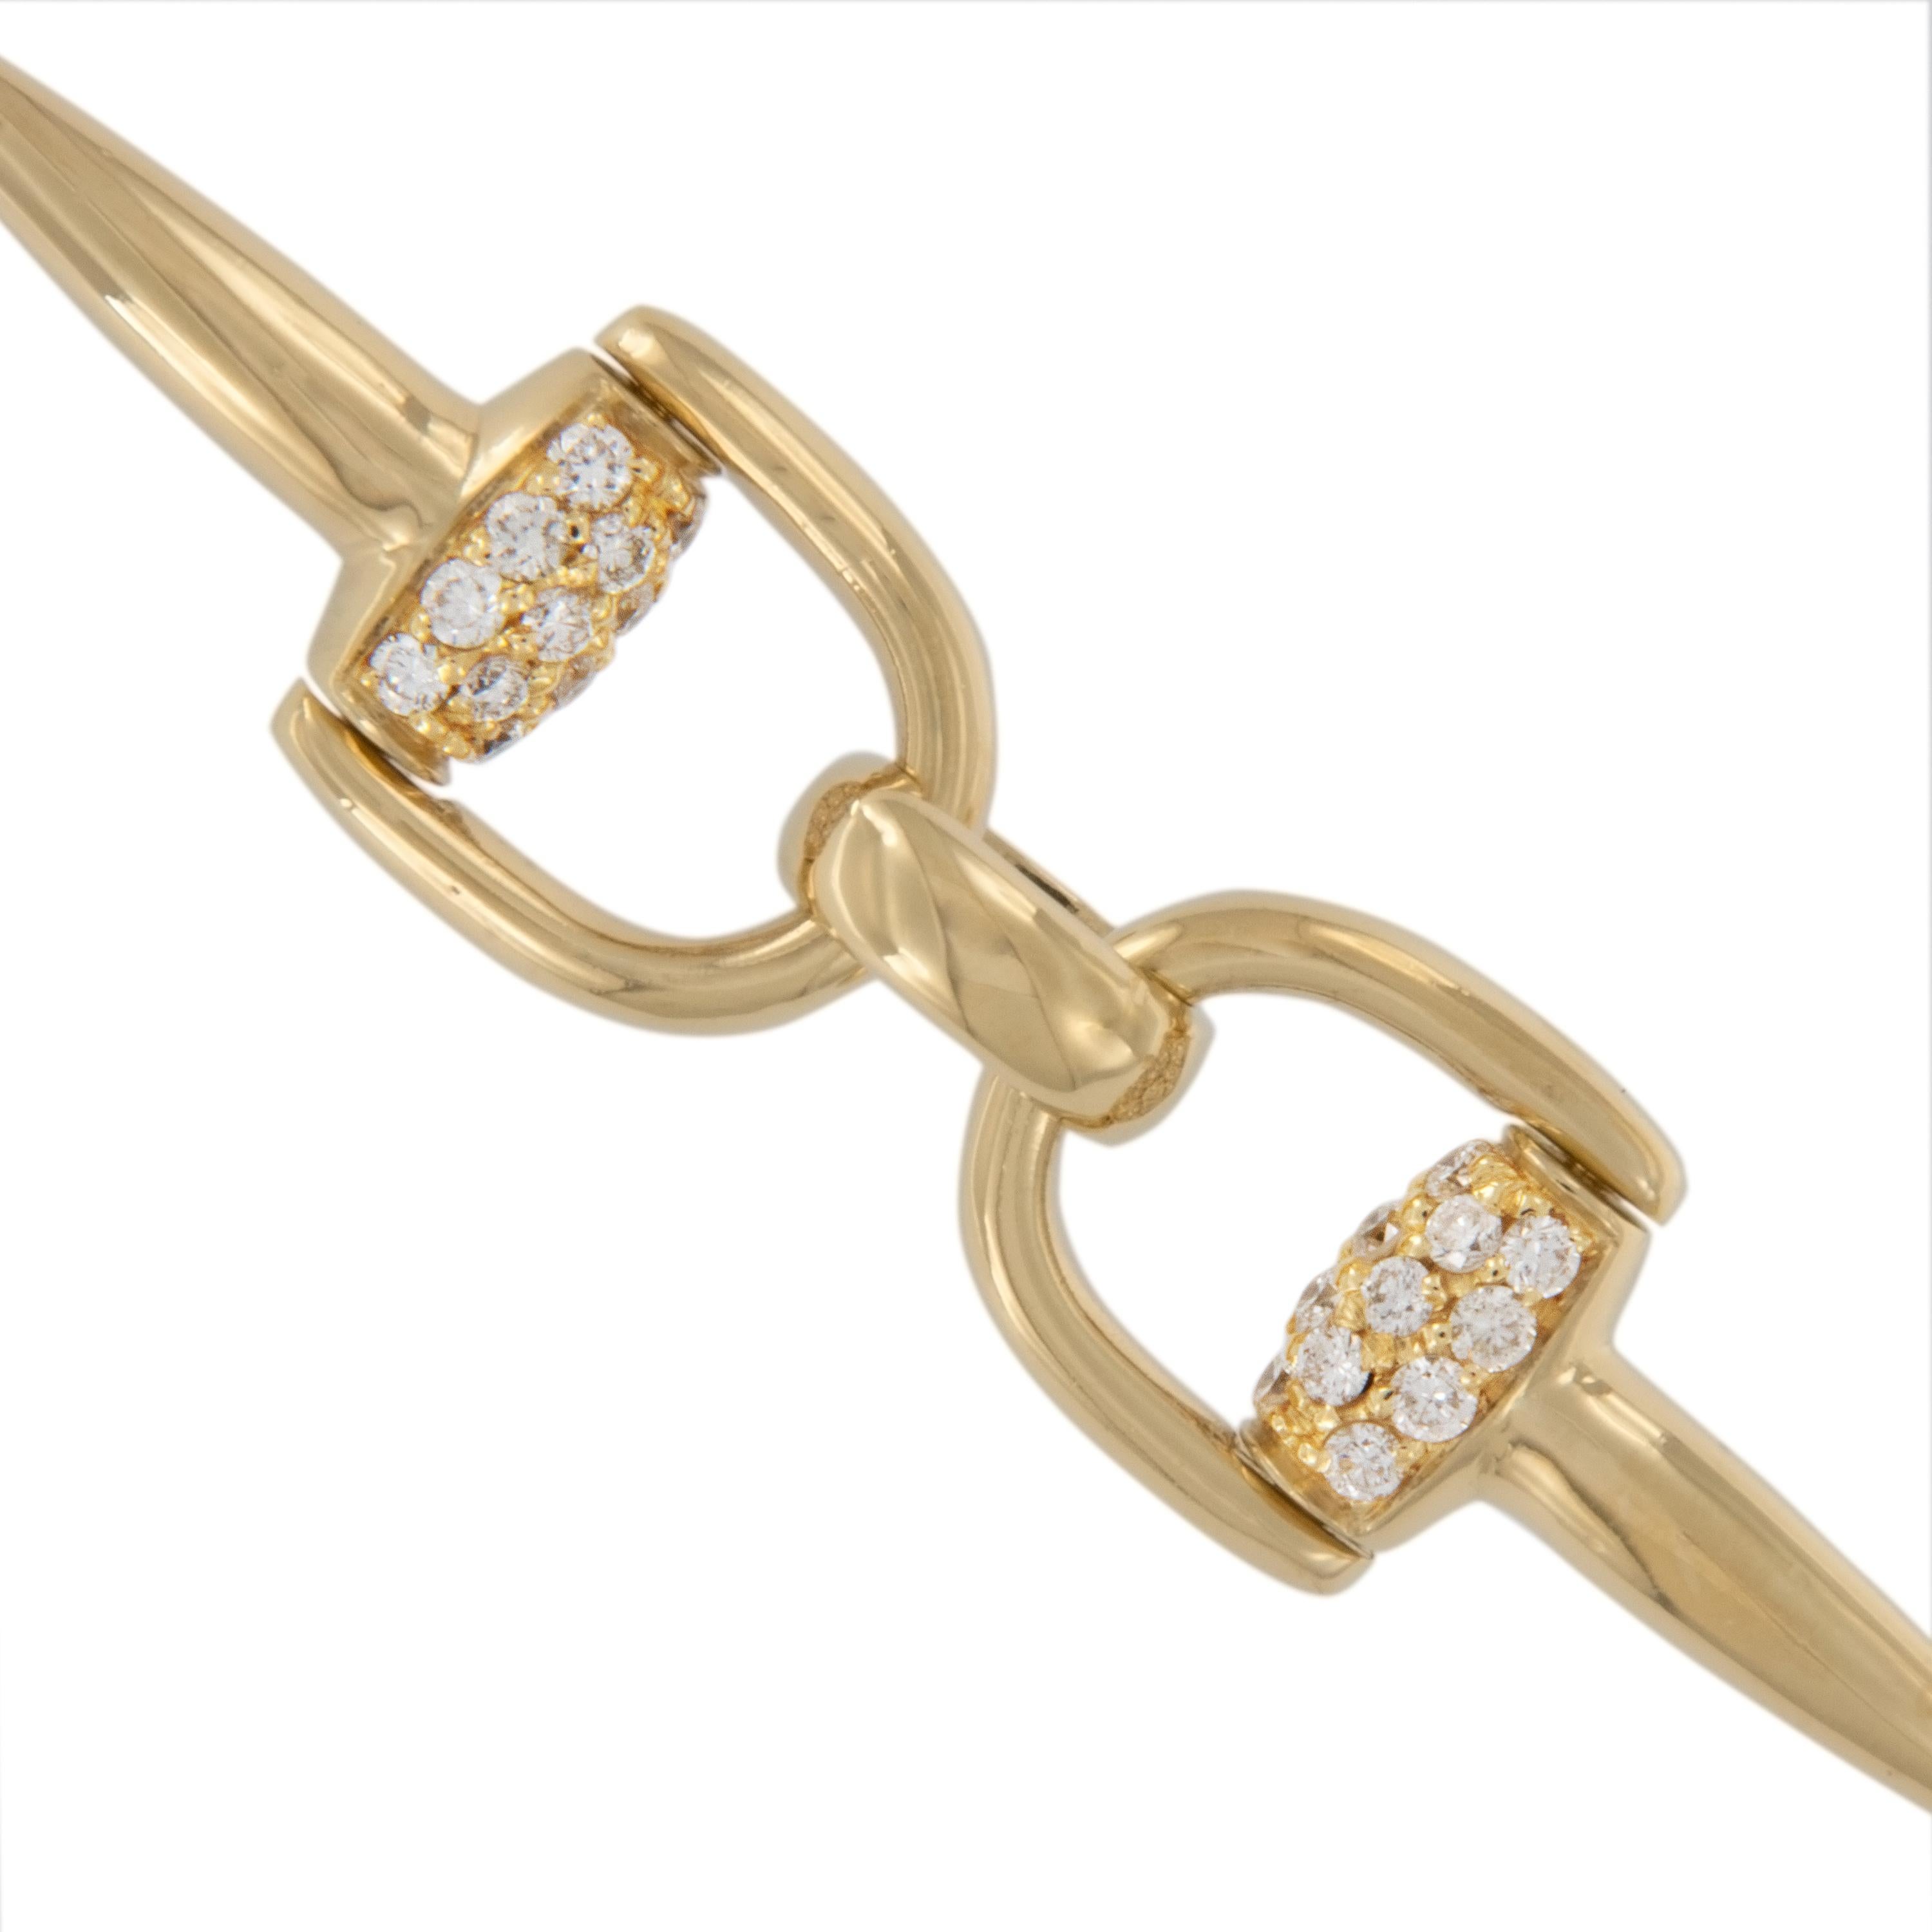 Taille ronde Bracelet à motif étrier en or jaune 18 carats et diamants de 1,15 carat, fabrication italienne